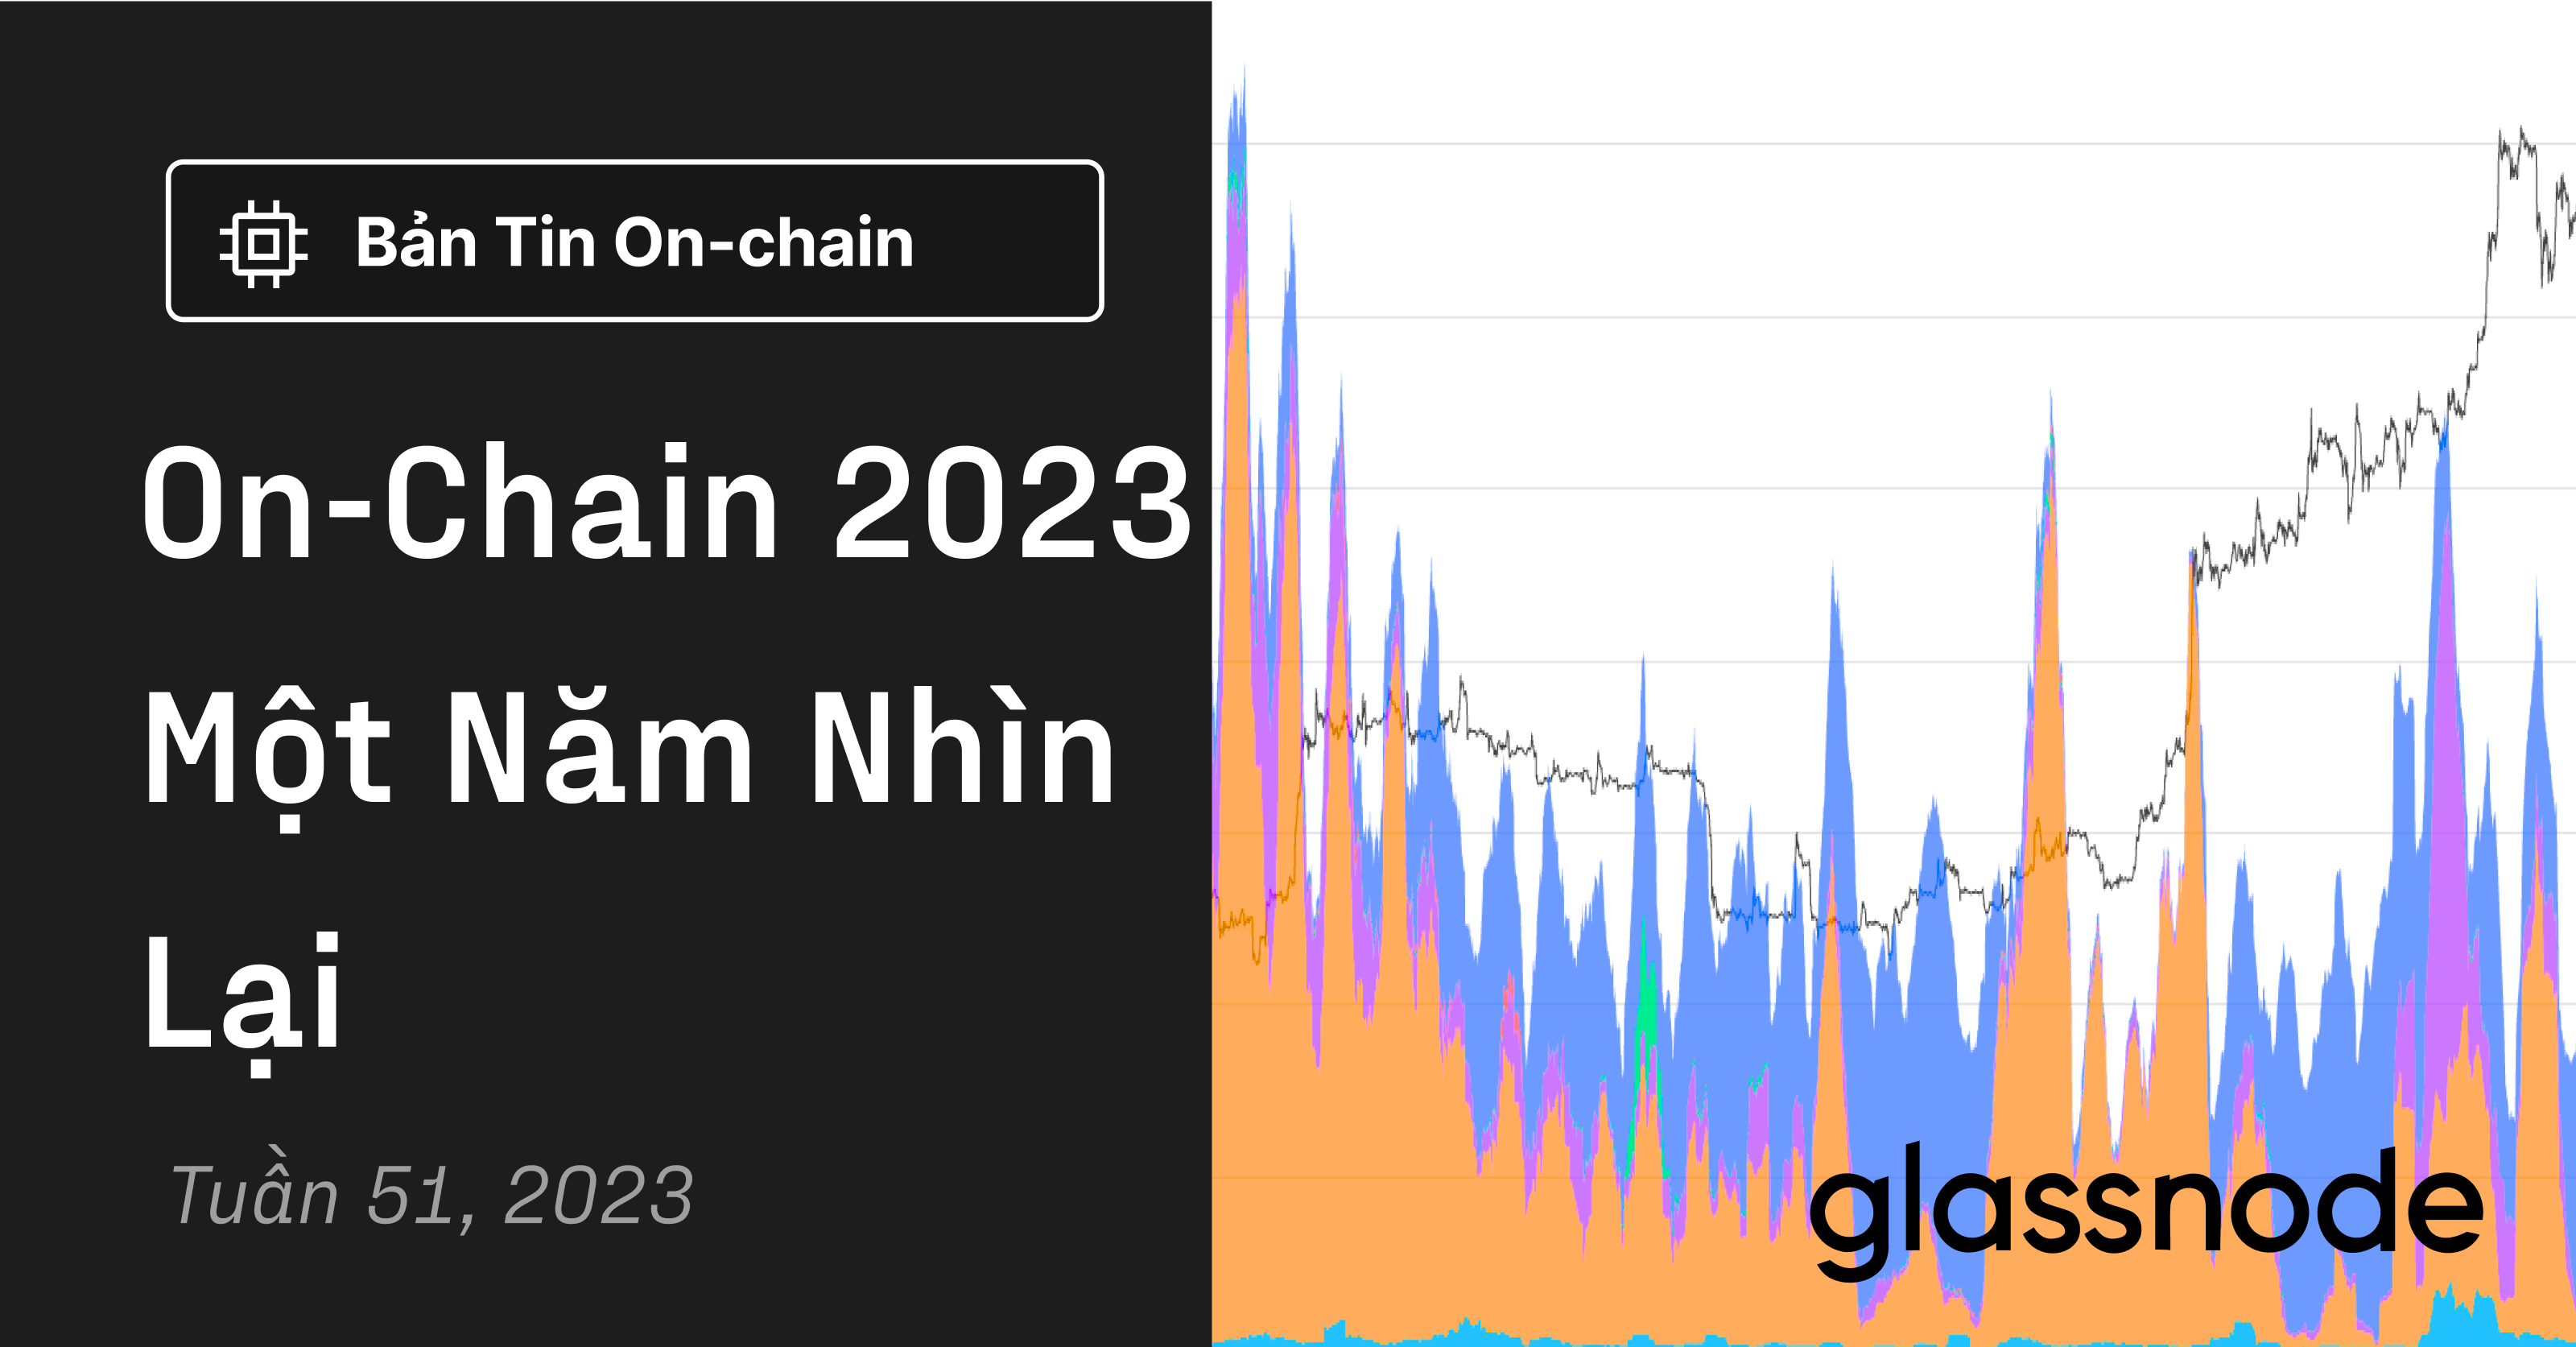 On-chain 2023 - Một Năm Nhìn Lại